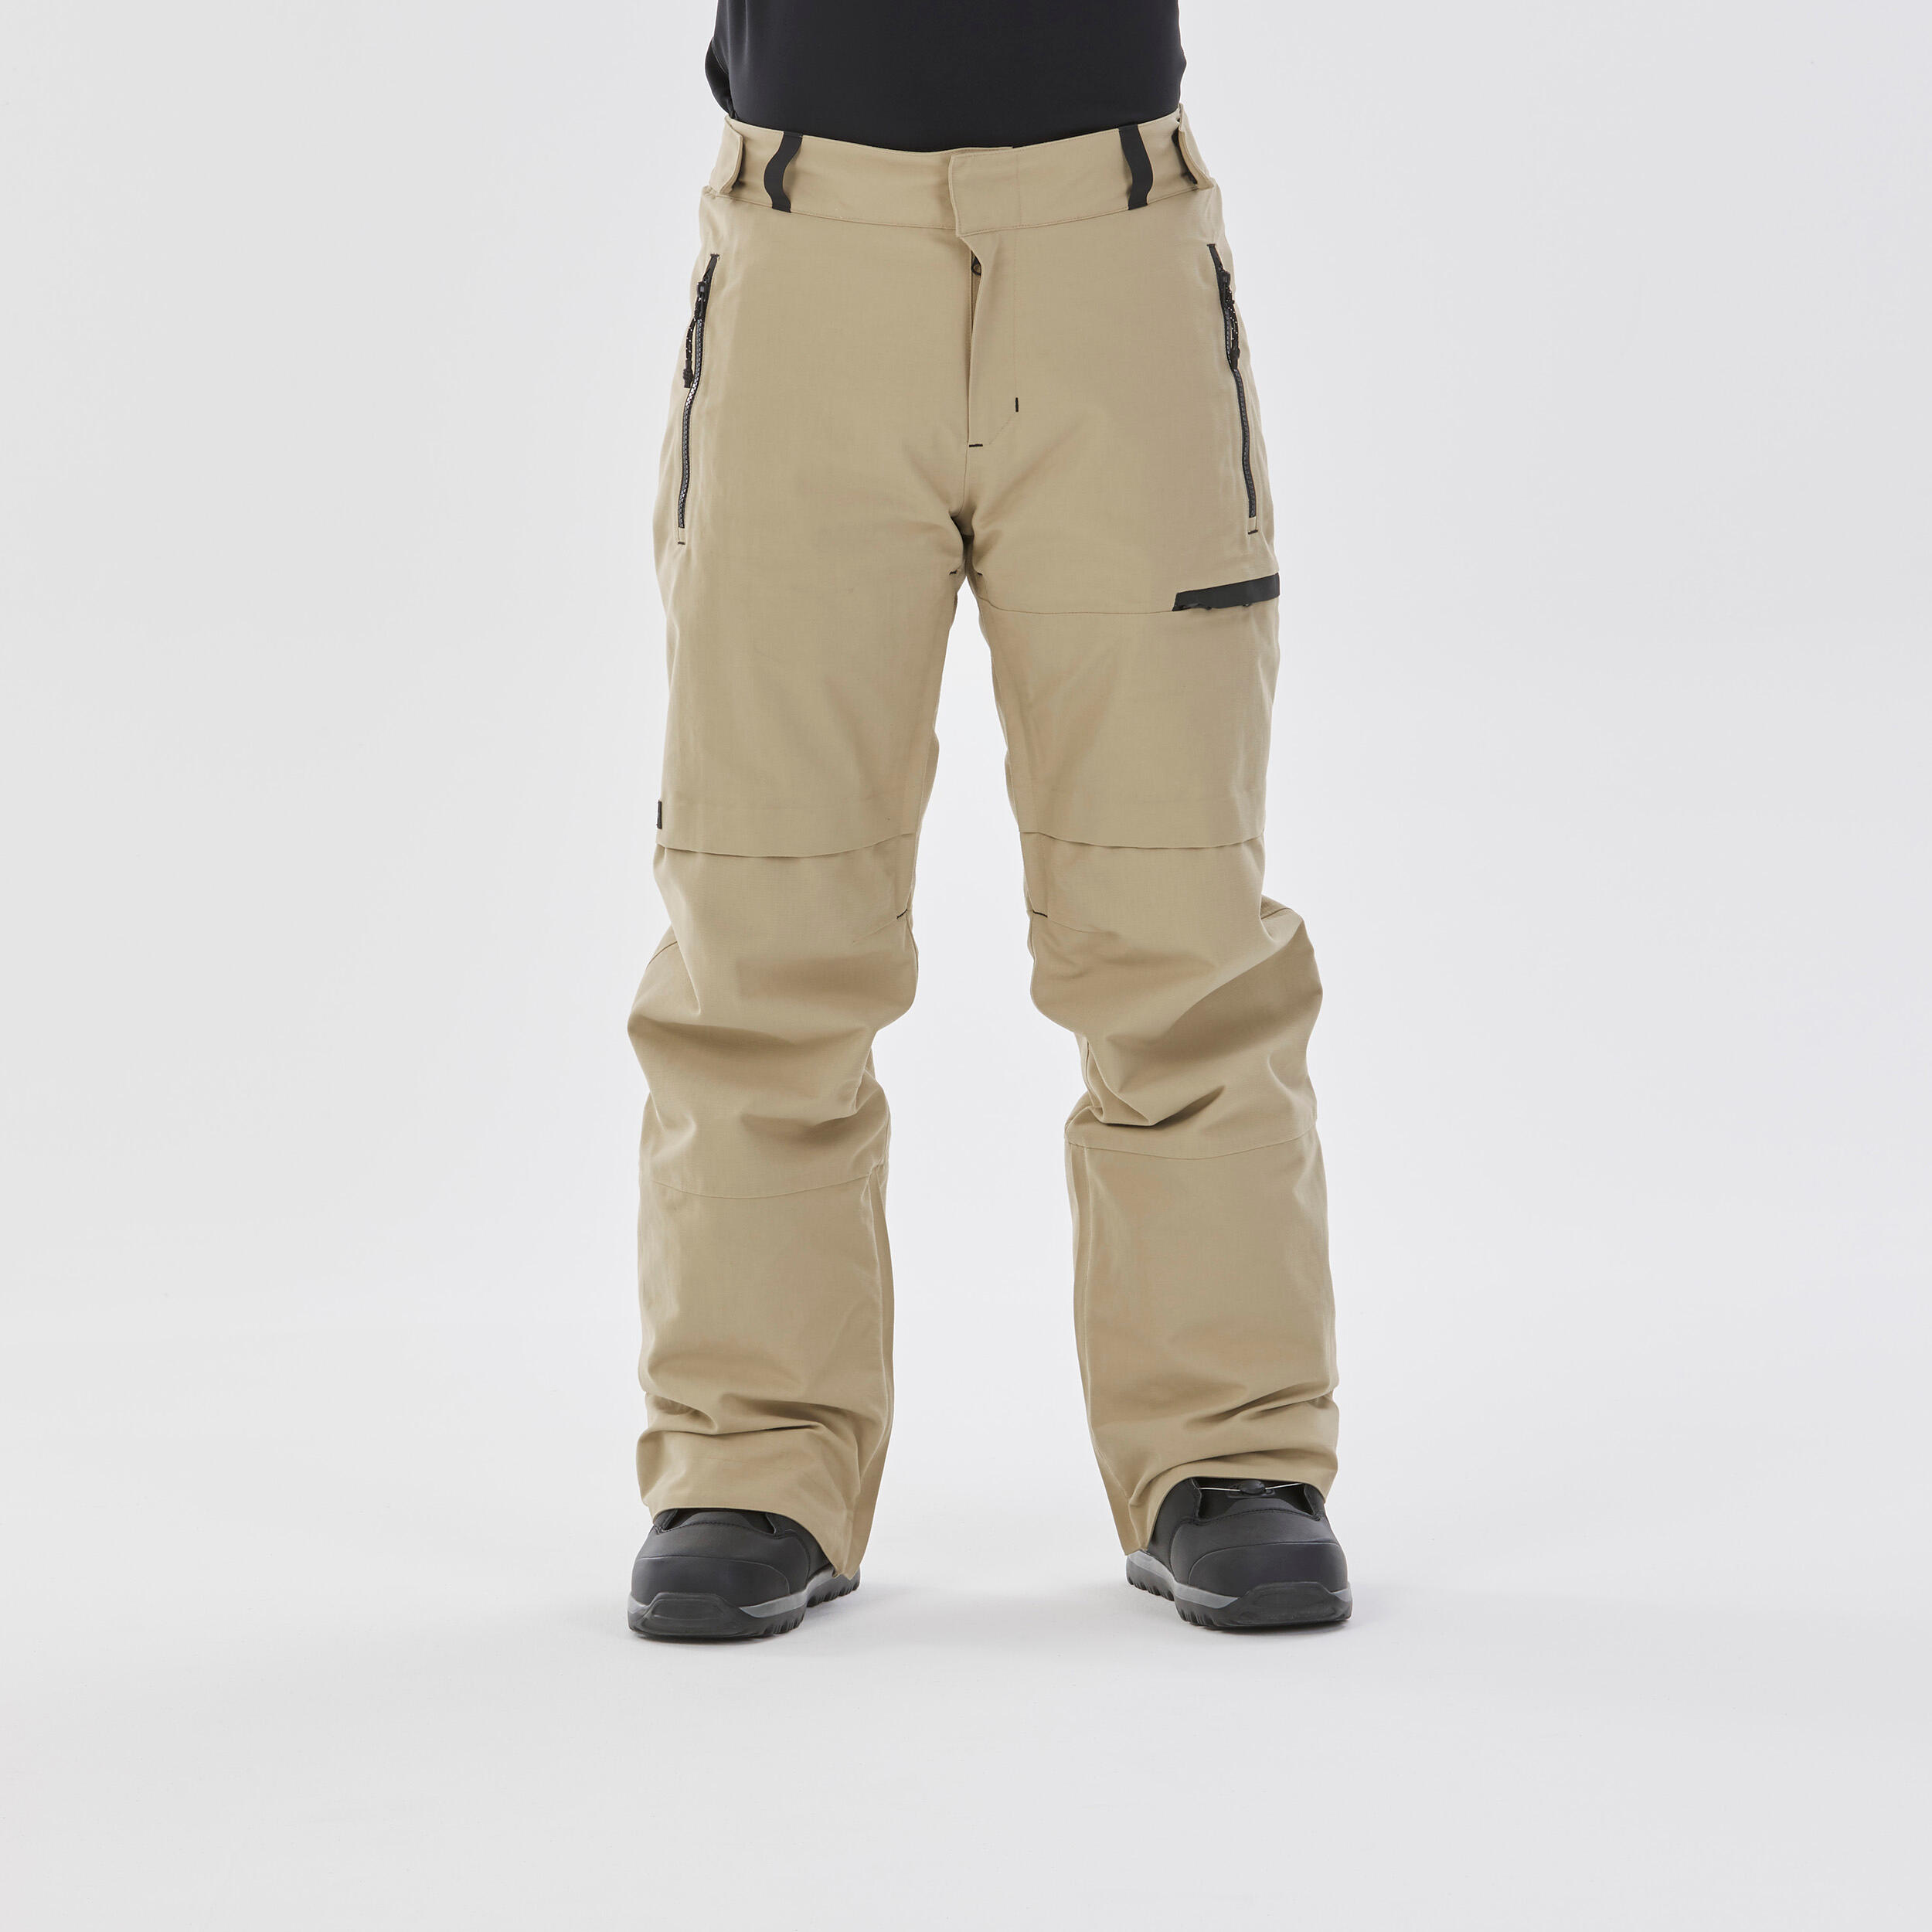 Pantalon Impermeabil Snowboard Snb 500 Bej Barbati